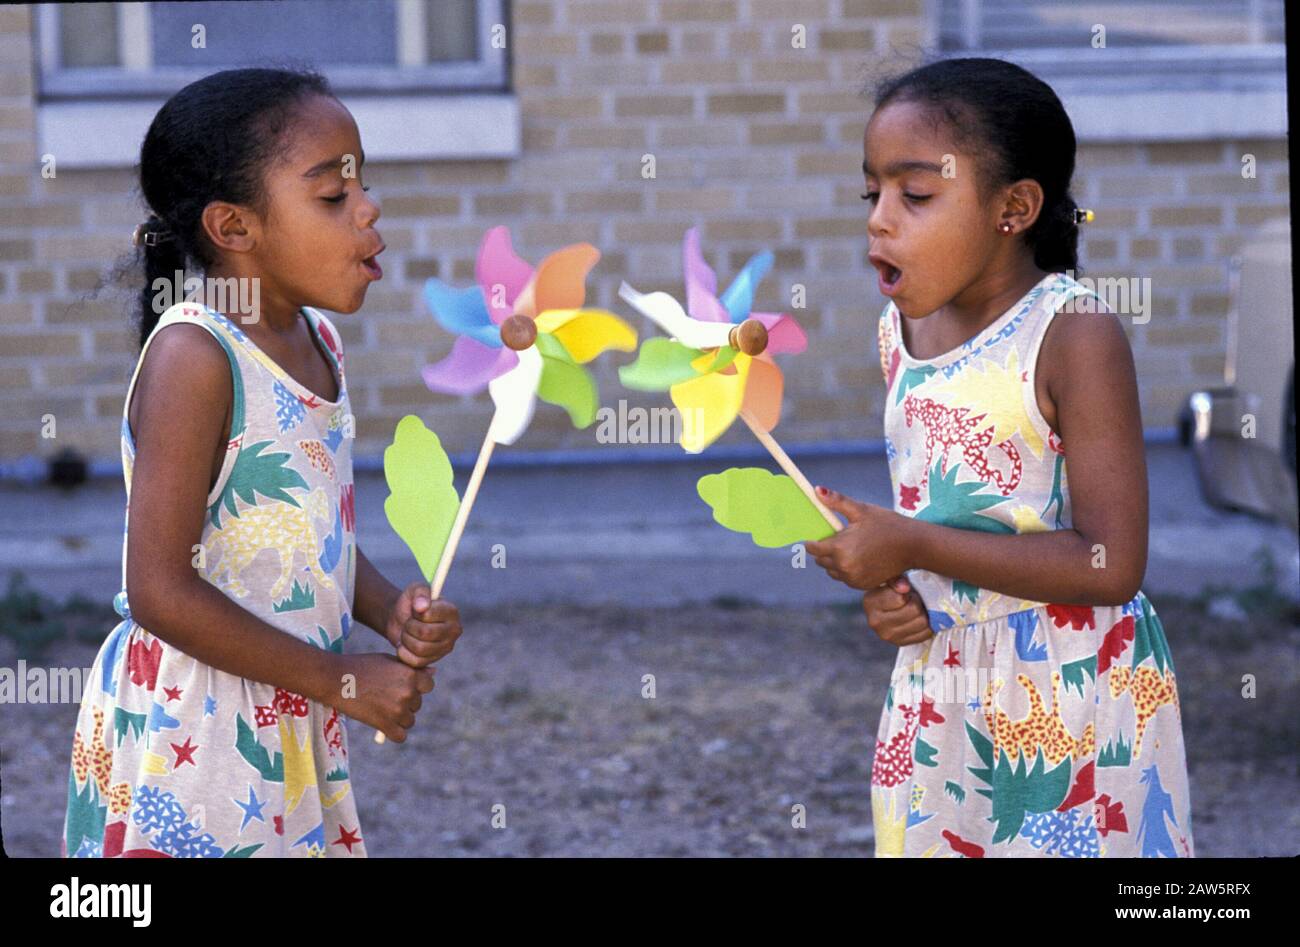 Austin Texas USA, um 1993: Acht Jahre alte schwarze Zwillingsschwestern blasen auf Nadelräder, um sie zum Drehen zu bringen.©Bob Daemmrich Stockfoto